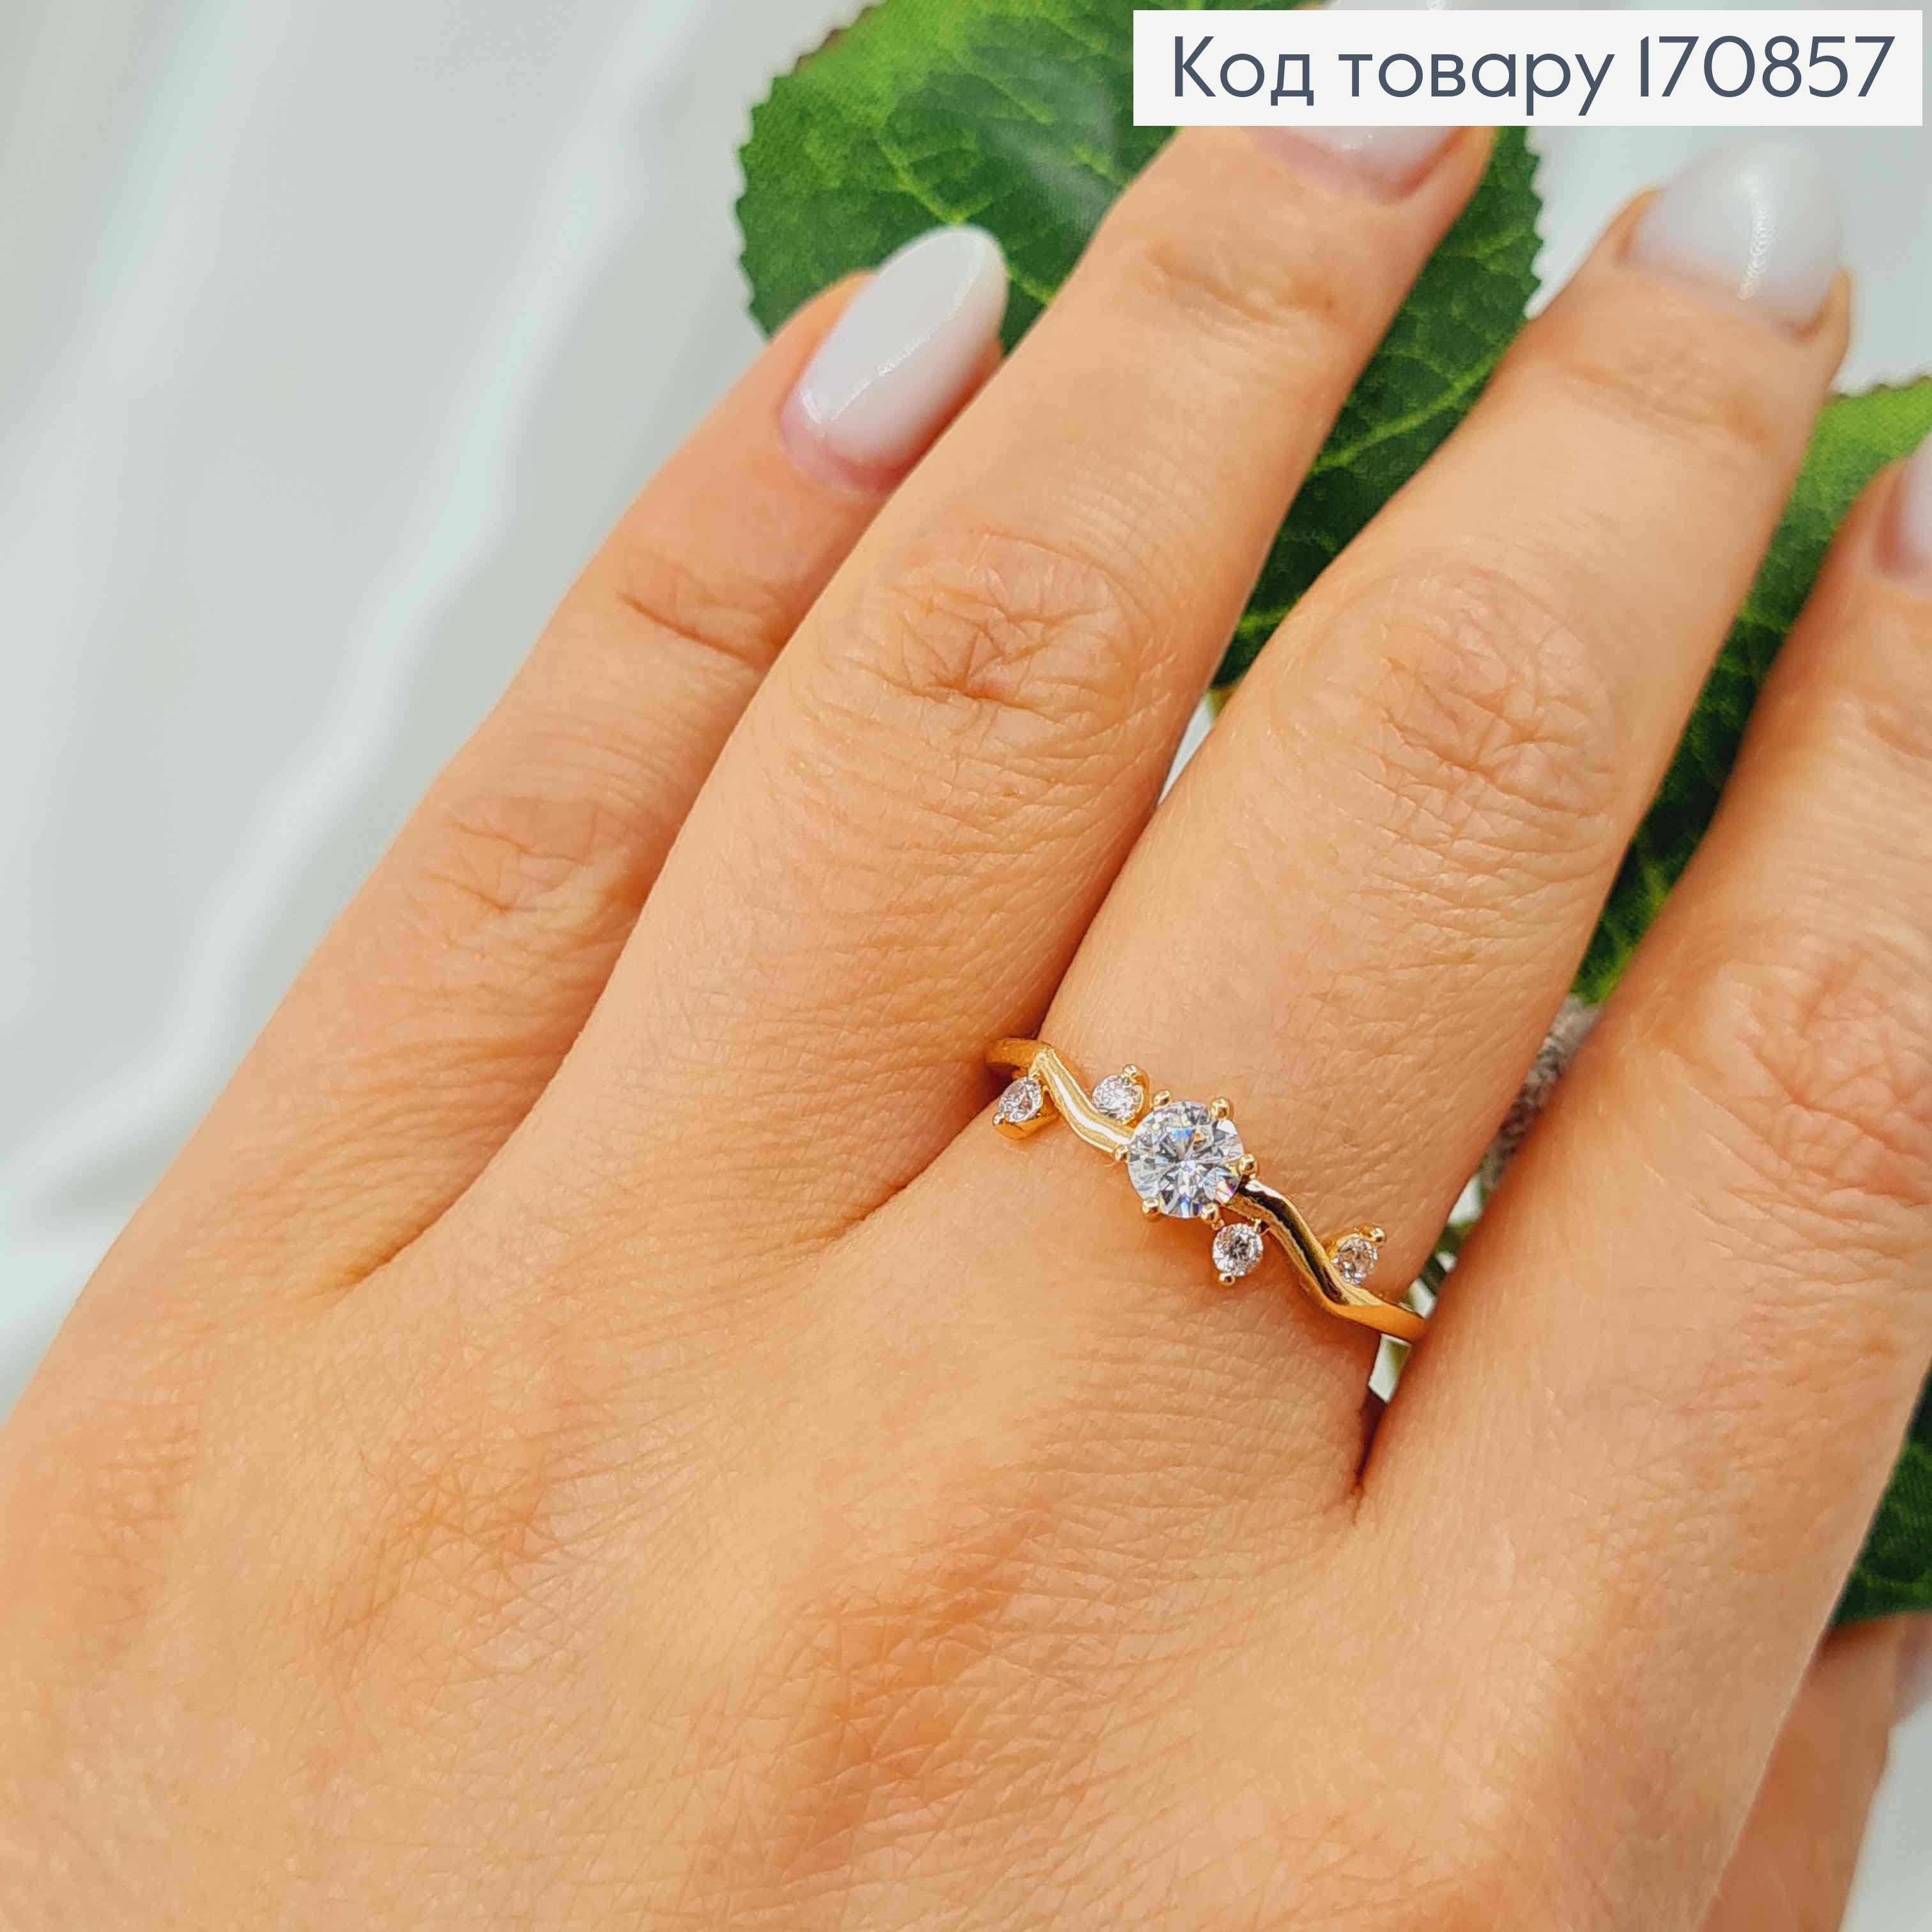 Перстень, "Цветящиеся лианы" с камнями, Xuping 18K 170857 фото 2